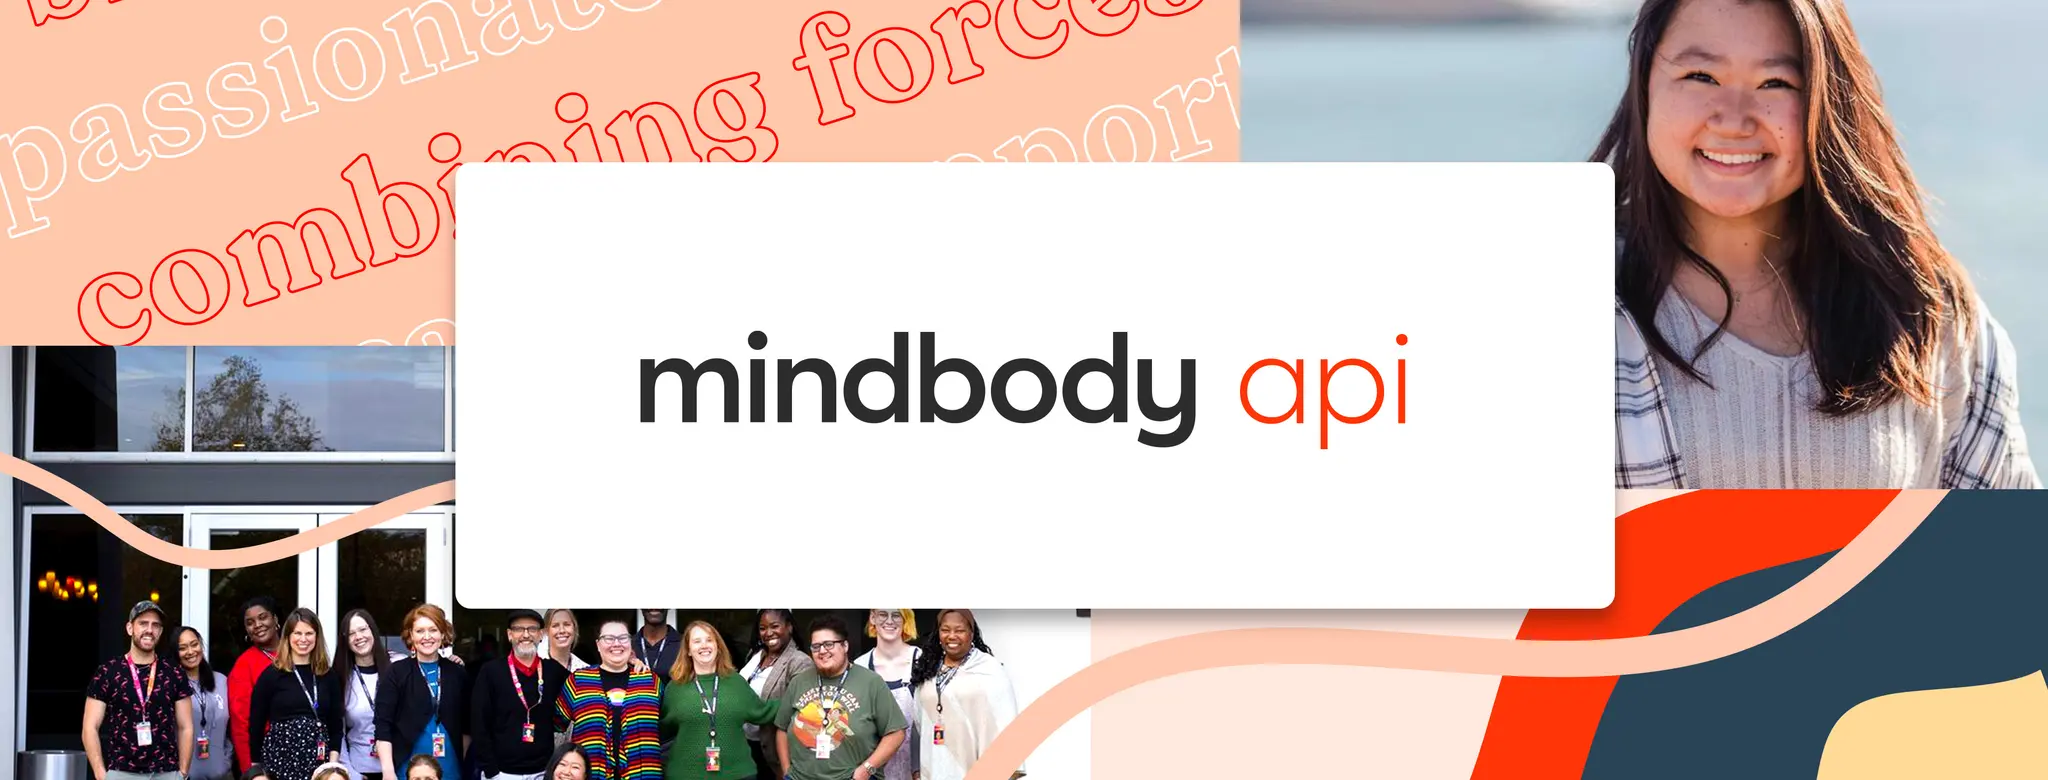 Mindbody API employee resource group blog